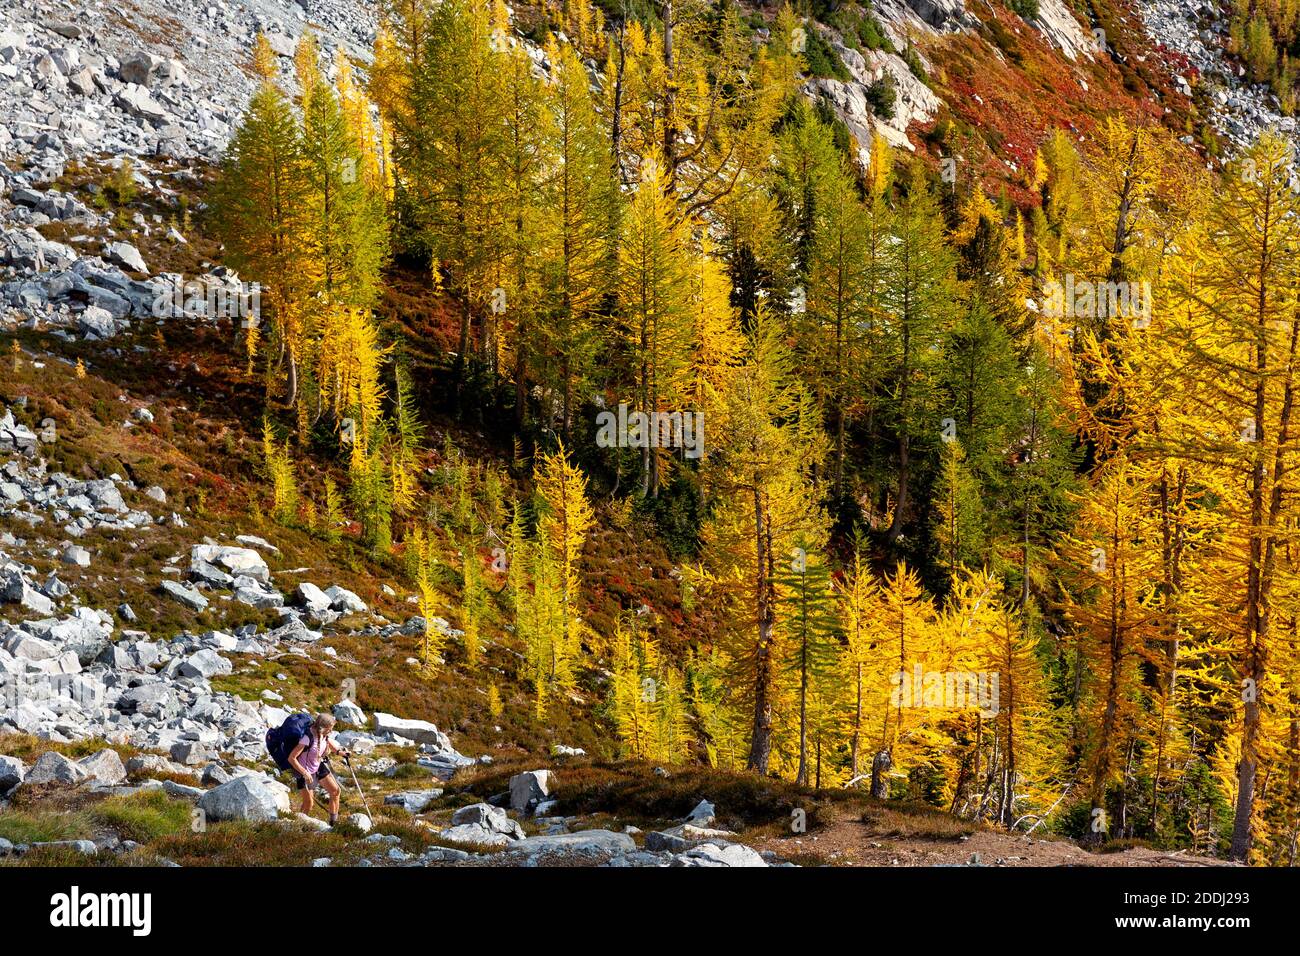 WA17774-00..... WASHINGTON - Frau Wandern mit Lärchen in Herbstfarbe am Upper Ice Lake, Glacier Peak Wilderness, Okanogan Wenatchee National Forest Stockfoto